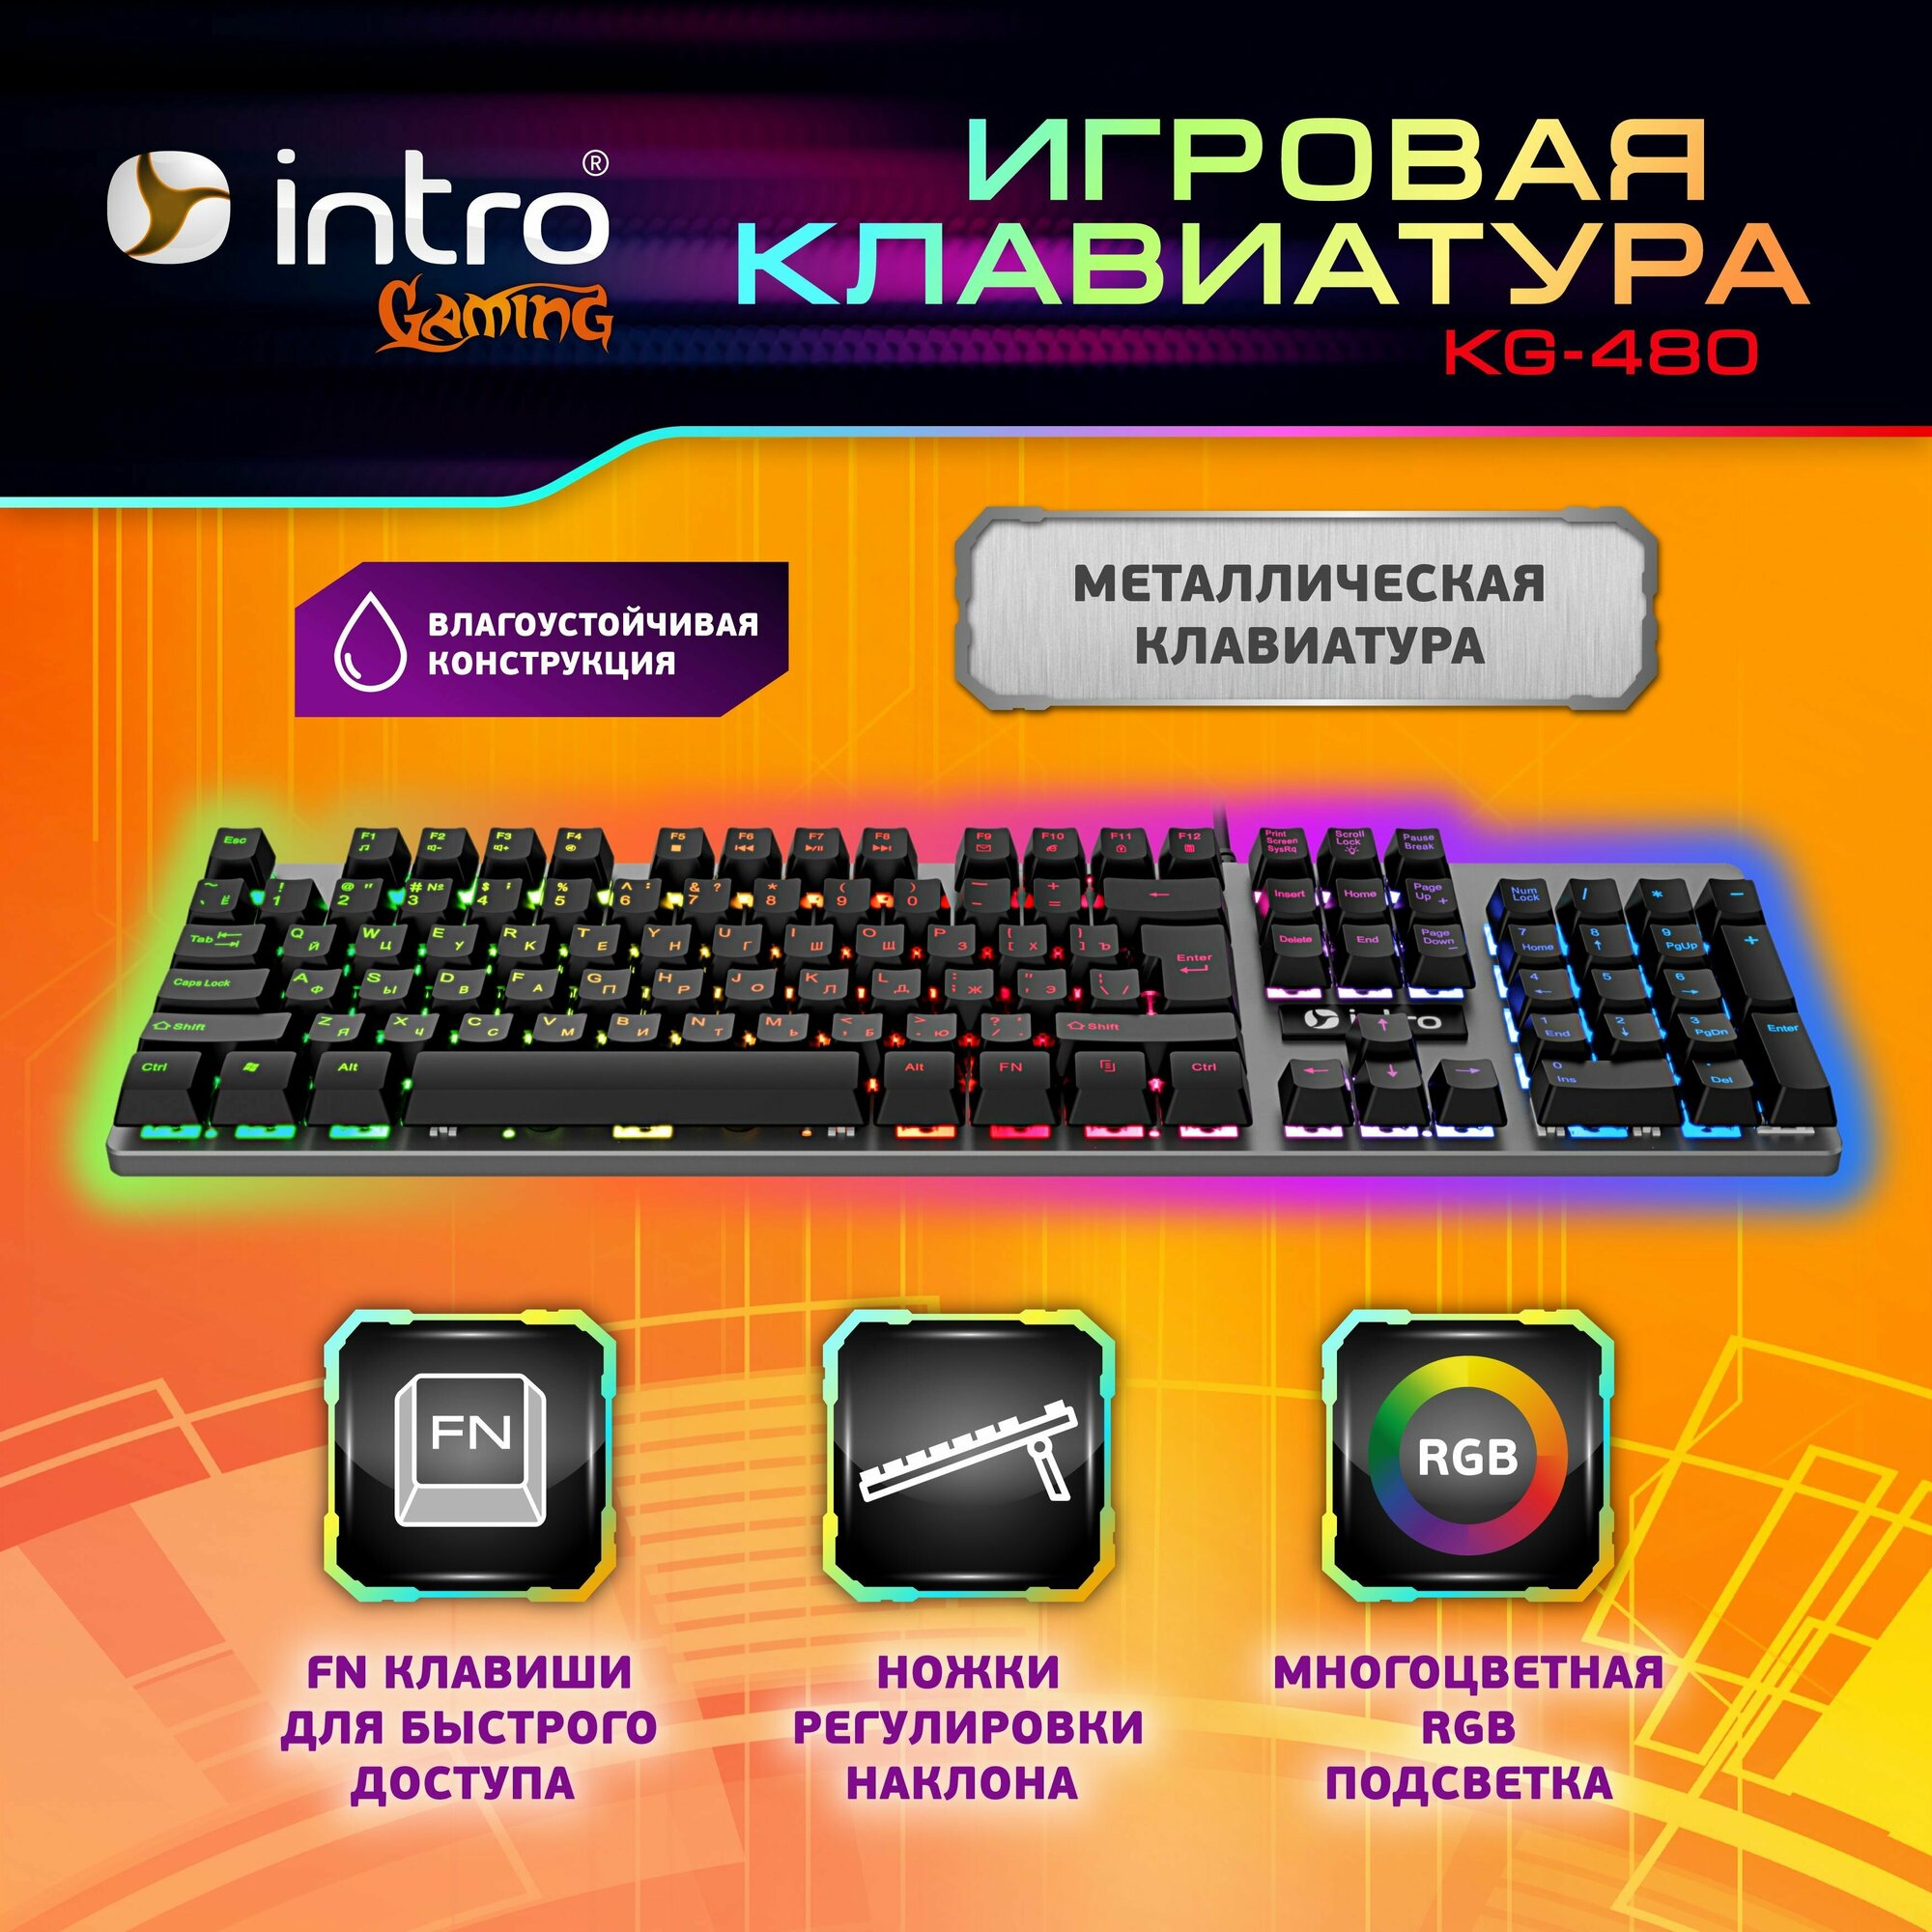 Игровая металлическая клавиатура с подсветкой Intro KG480